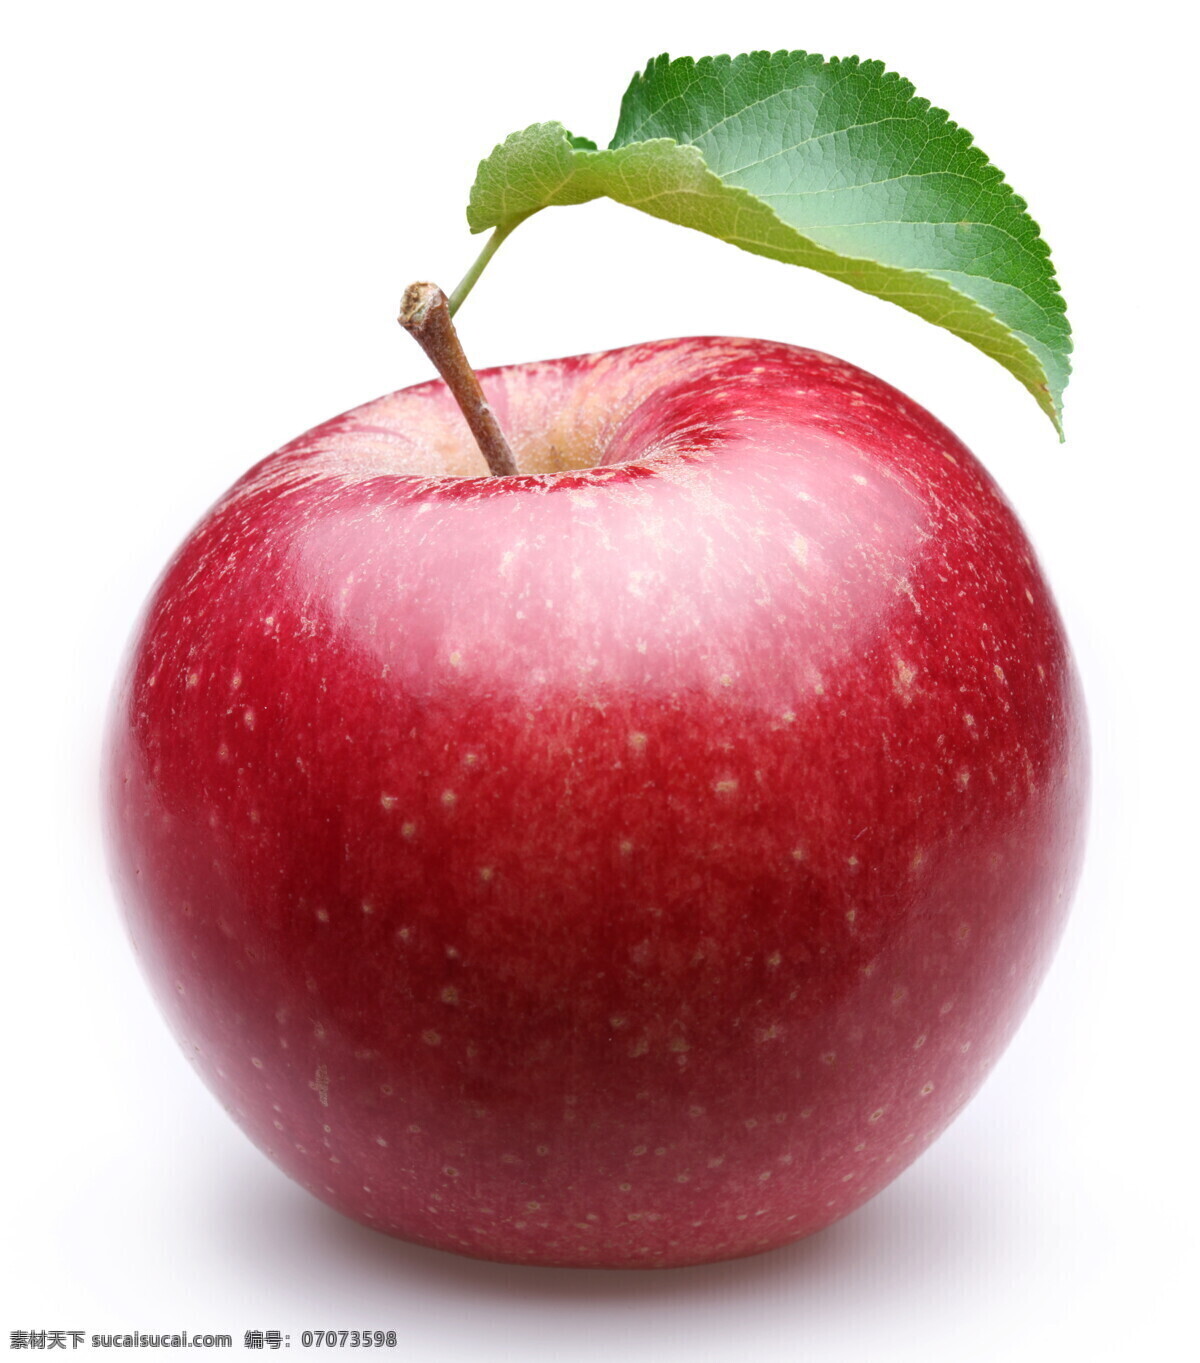 新鲜 红苹果 绿叶 树叶 苹果 新鲜水果 水果摄影 果实 苹果图片 餐饮美食